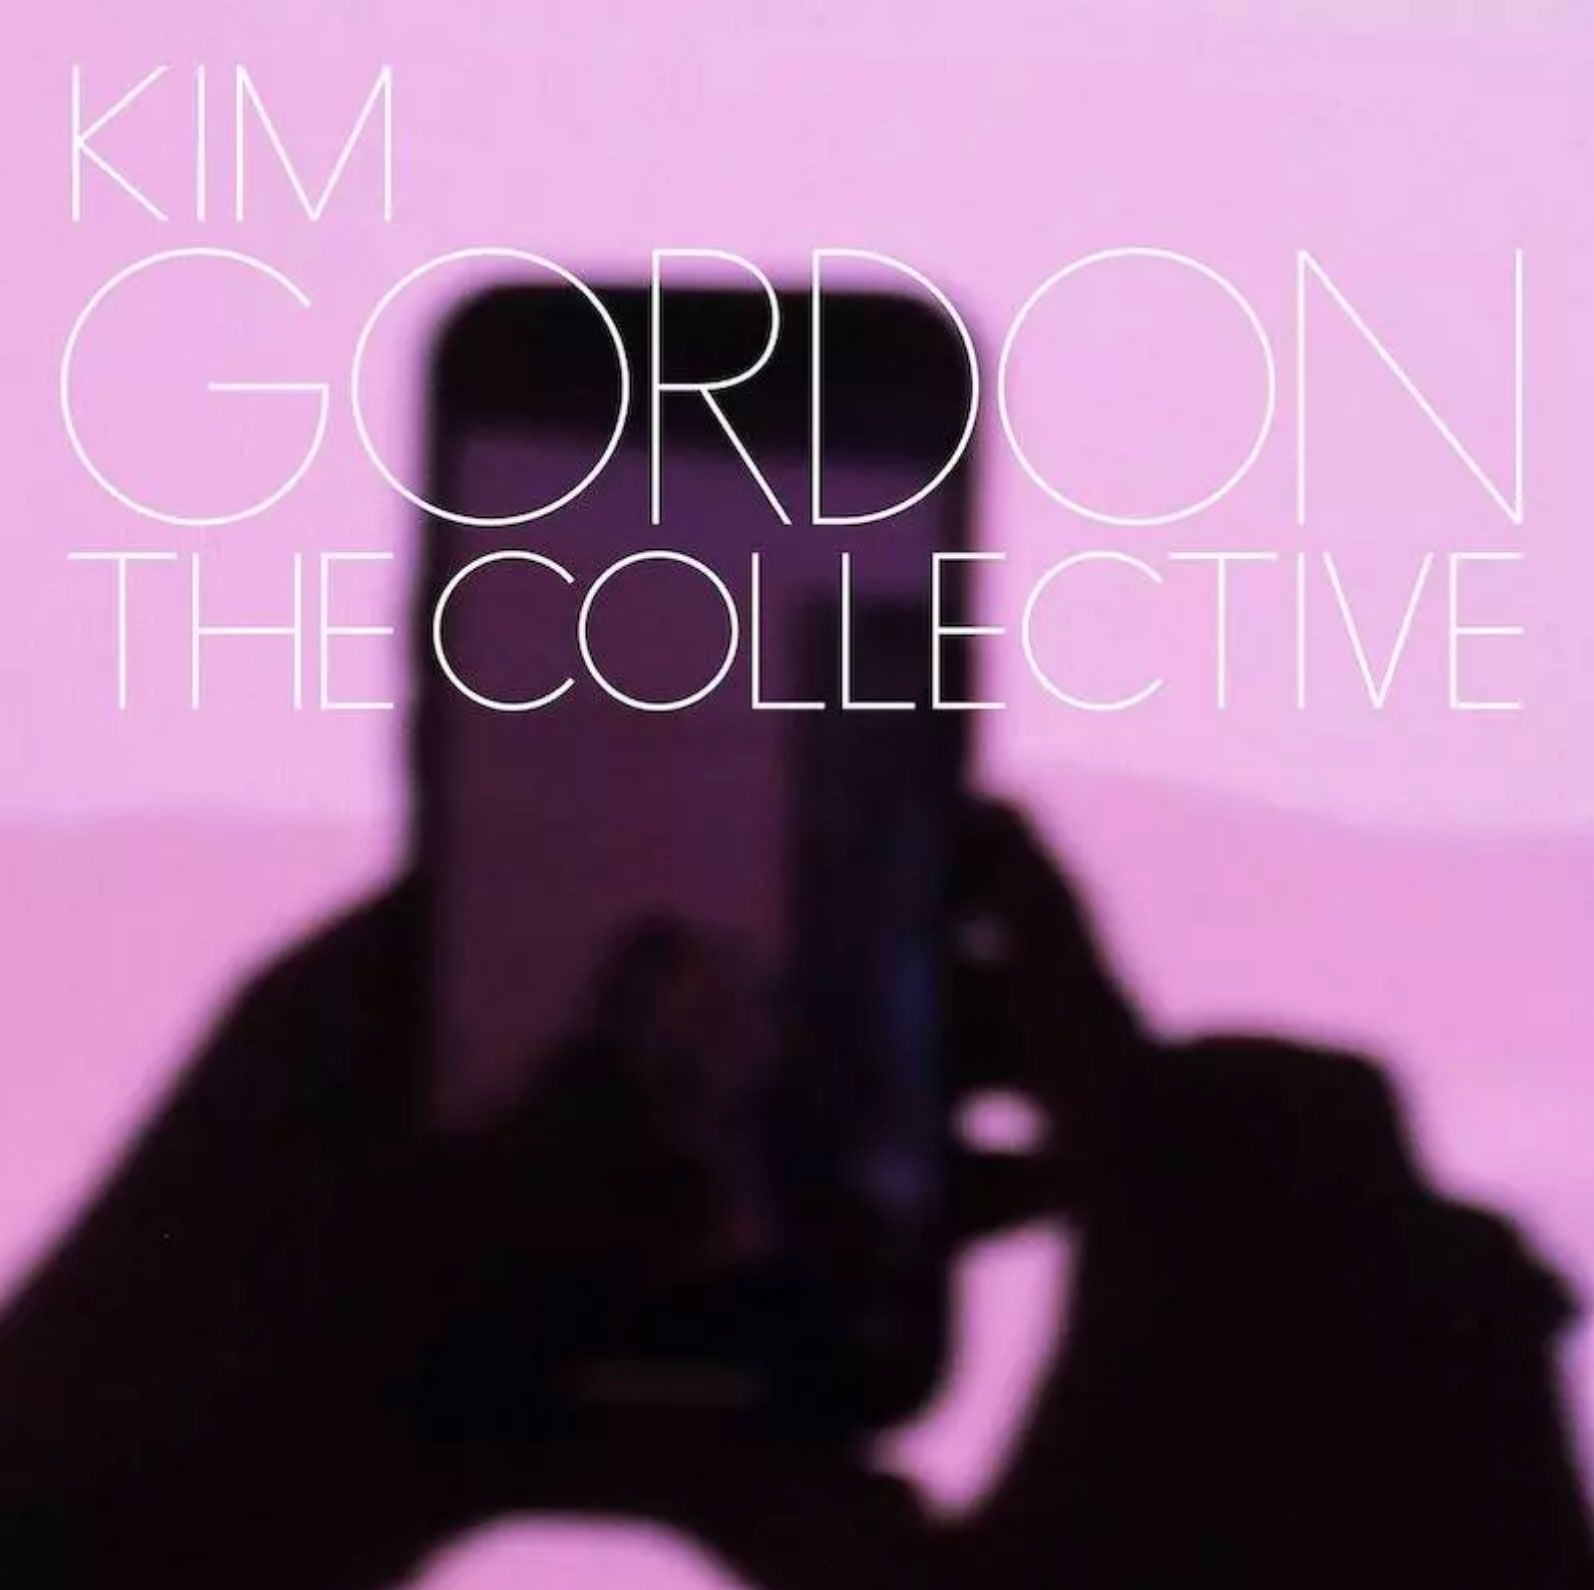 Kim Gordonen 'The Collective' diskoaren azala.